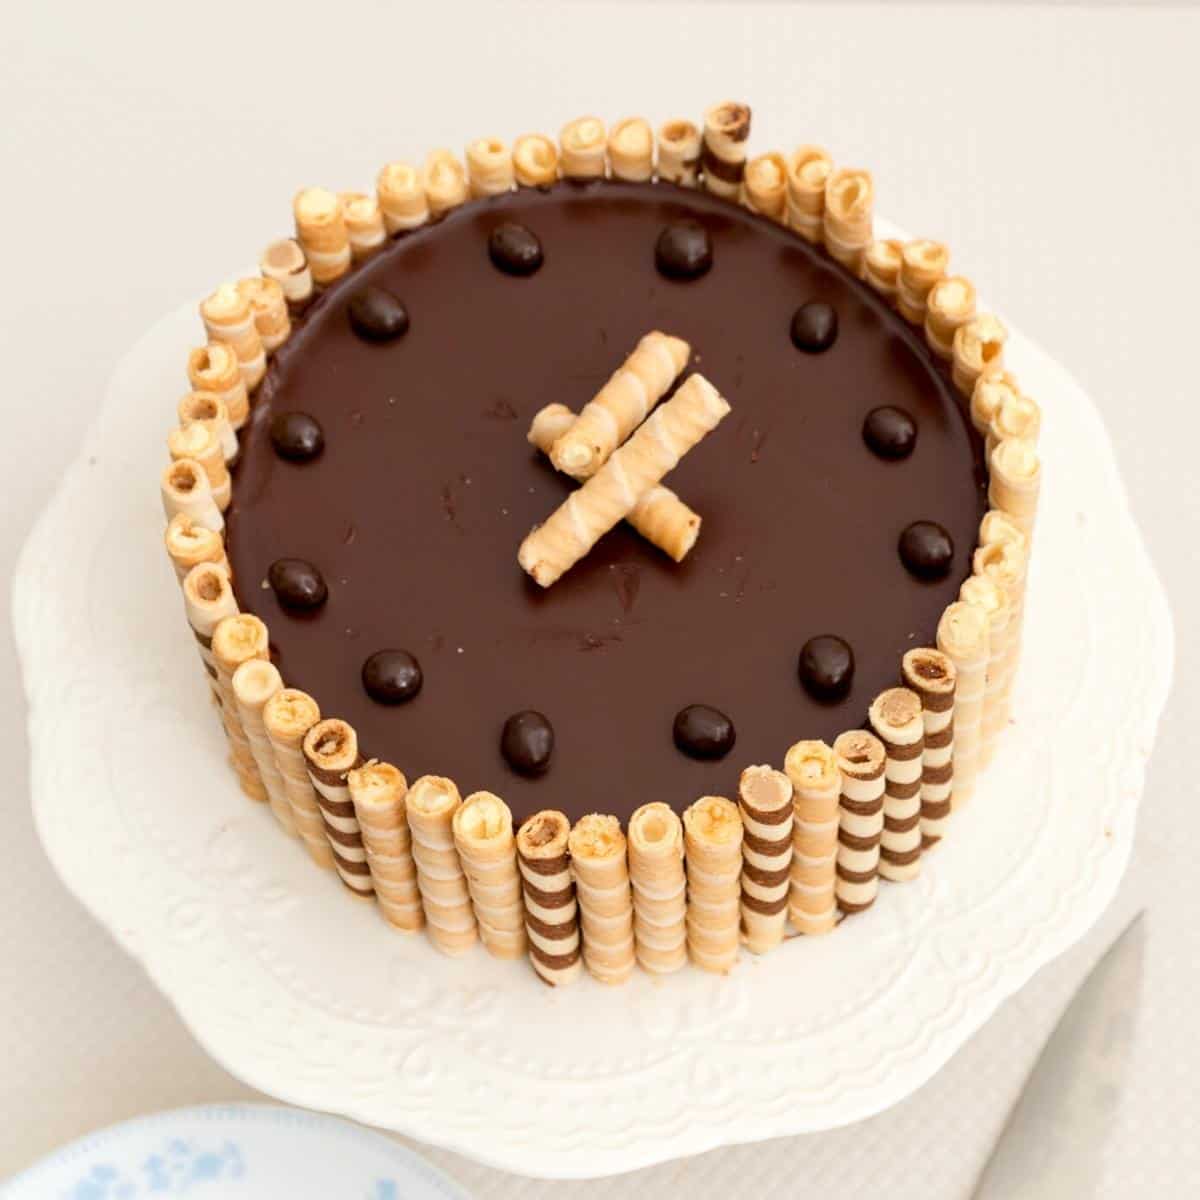 A chocolate cake flourless on a cake stand.